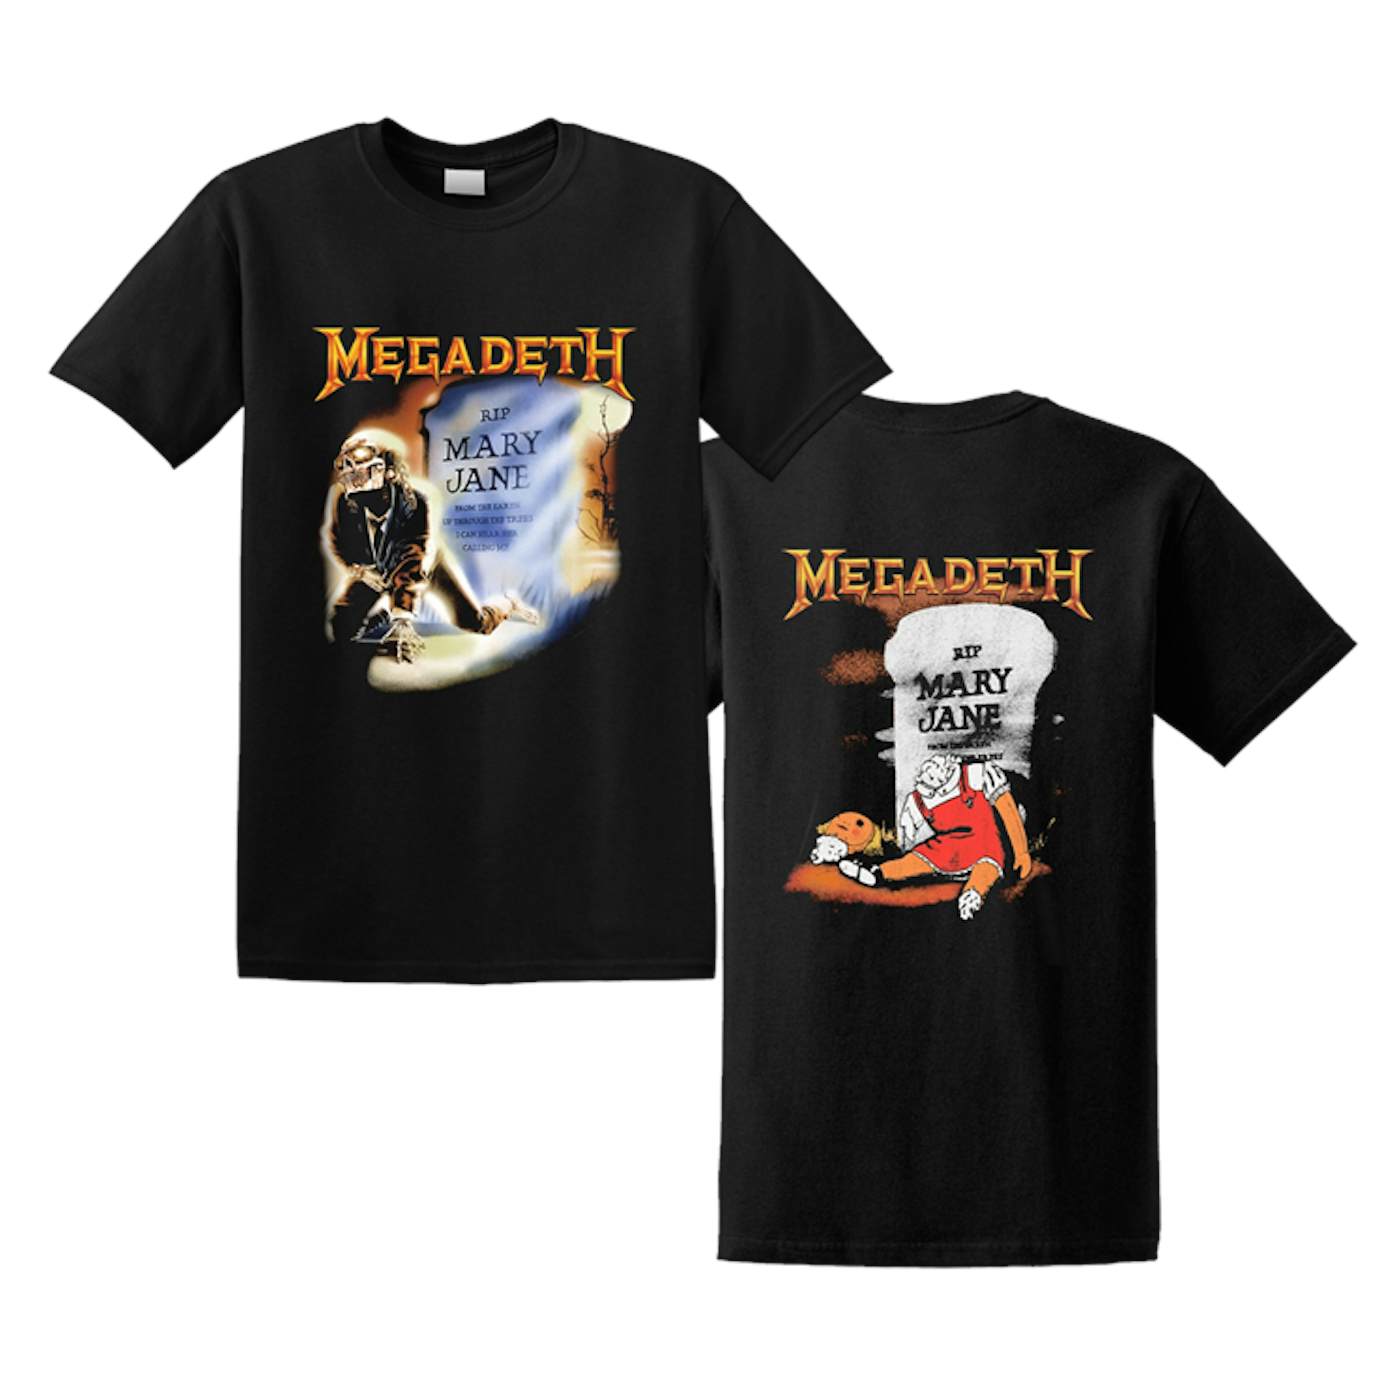 Megadeth T-Shirt | New World Order Art Shirt $31.00$23.95